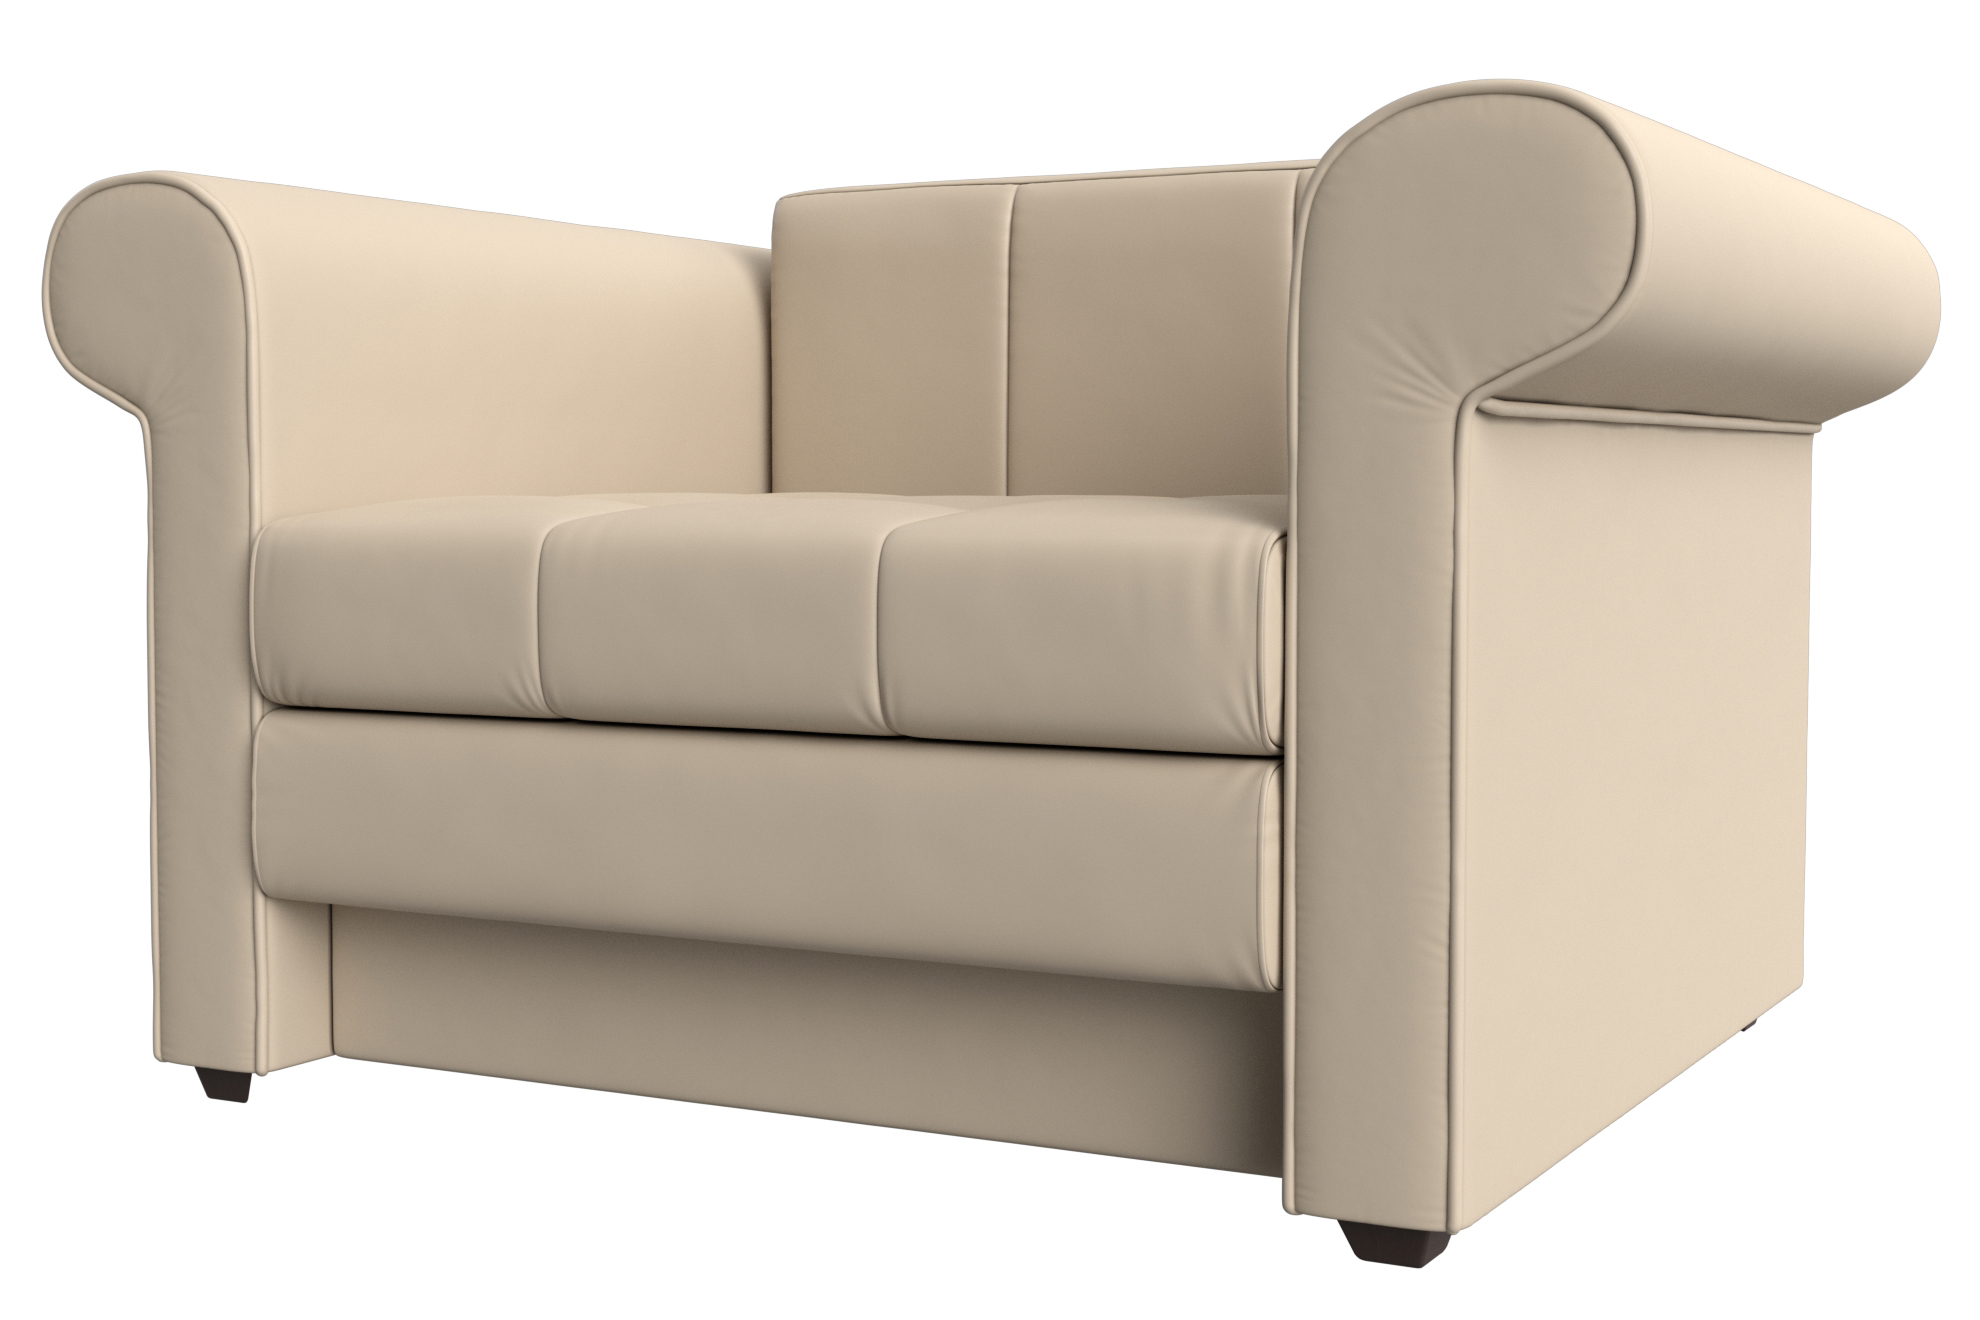 Кресло-кровать "Берли" бежевая экокожа купить в Калуге по цене 28290 руб с доставкой от Mnogomeb.ru